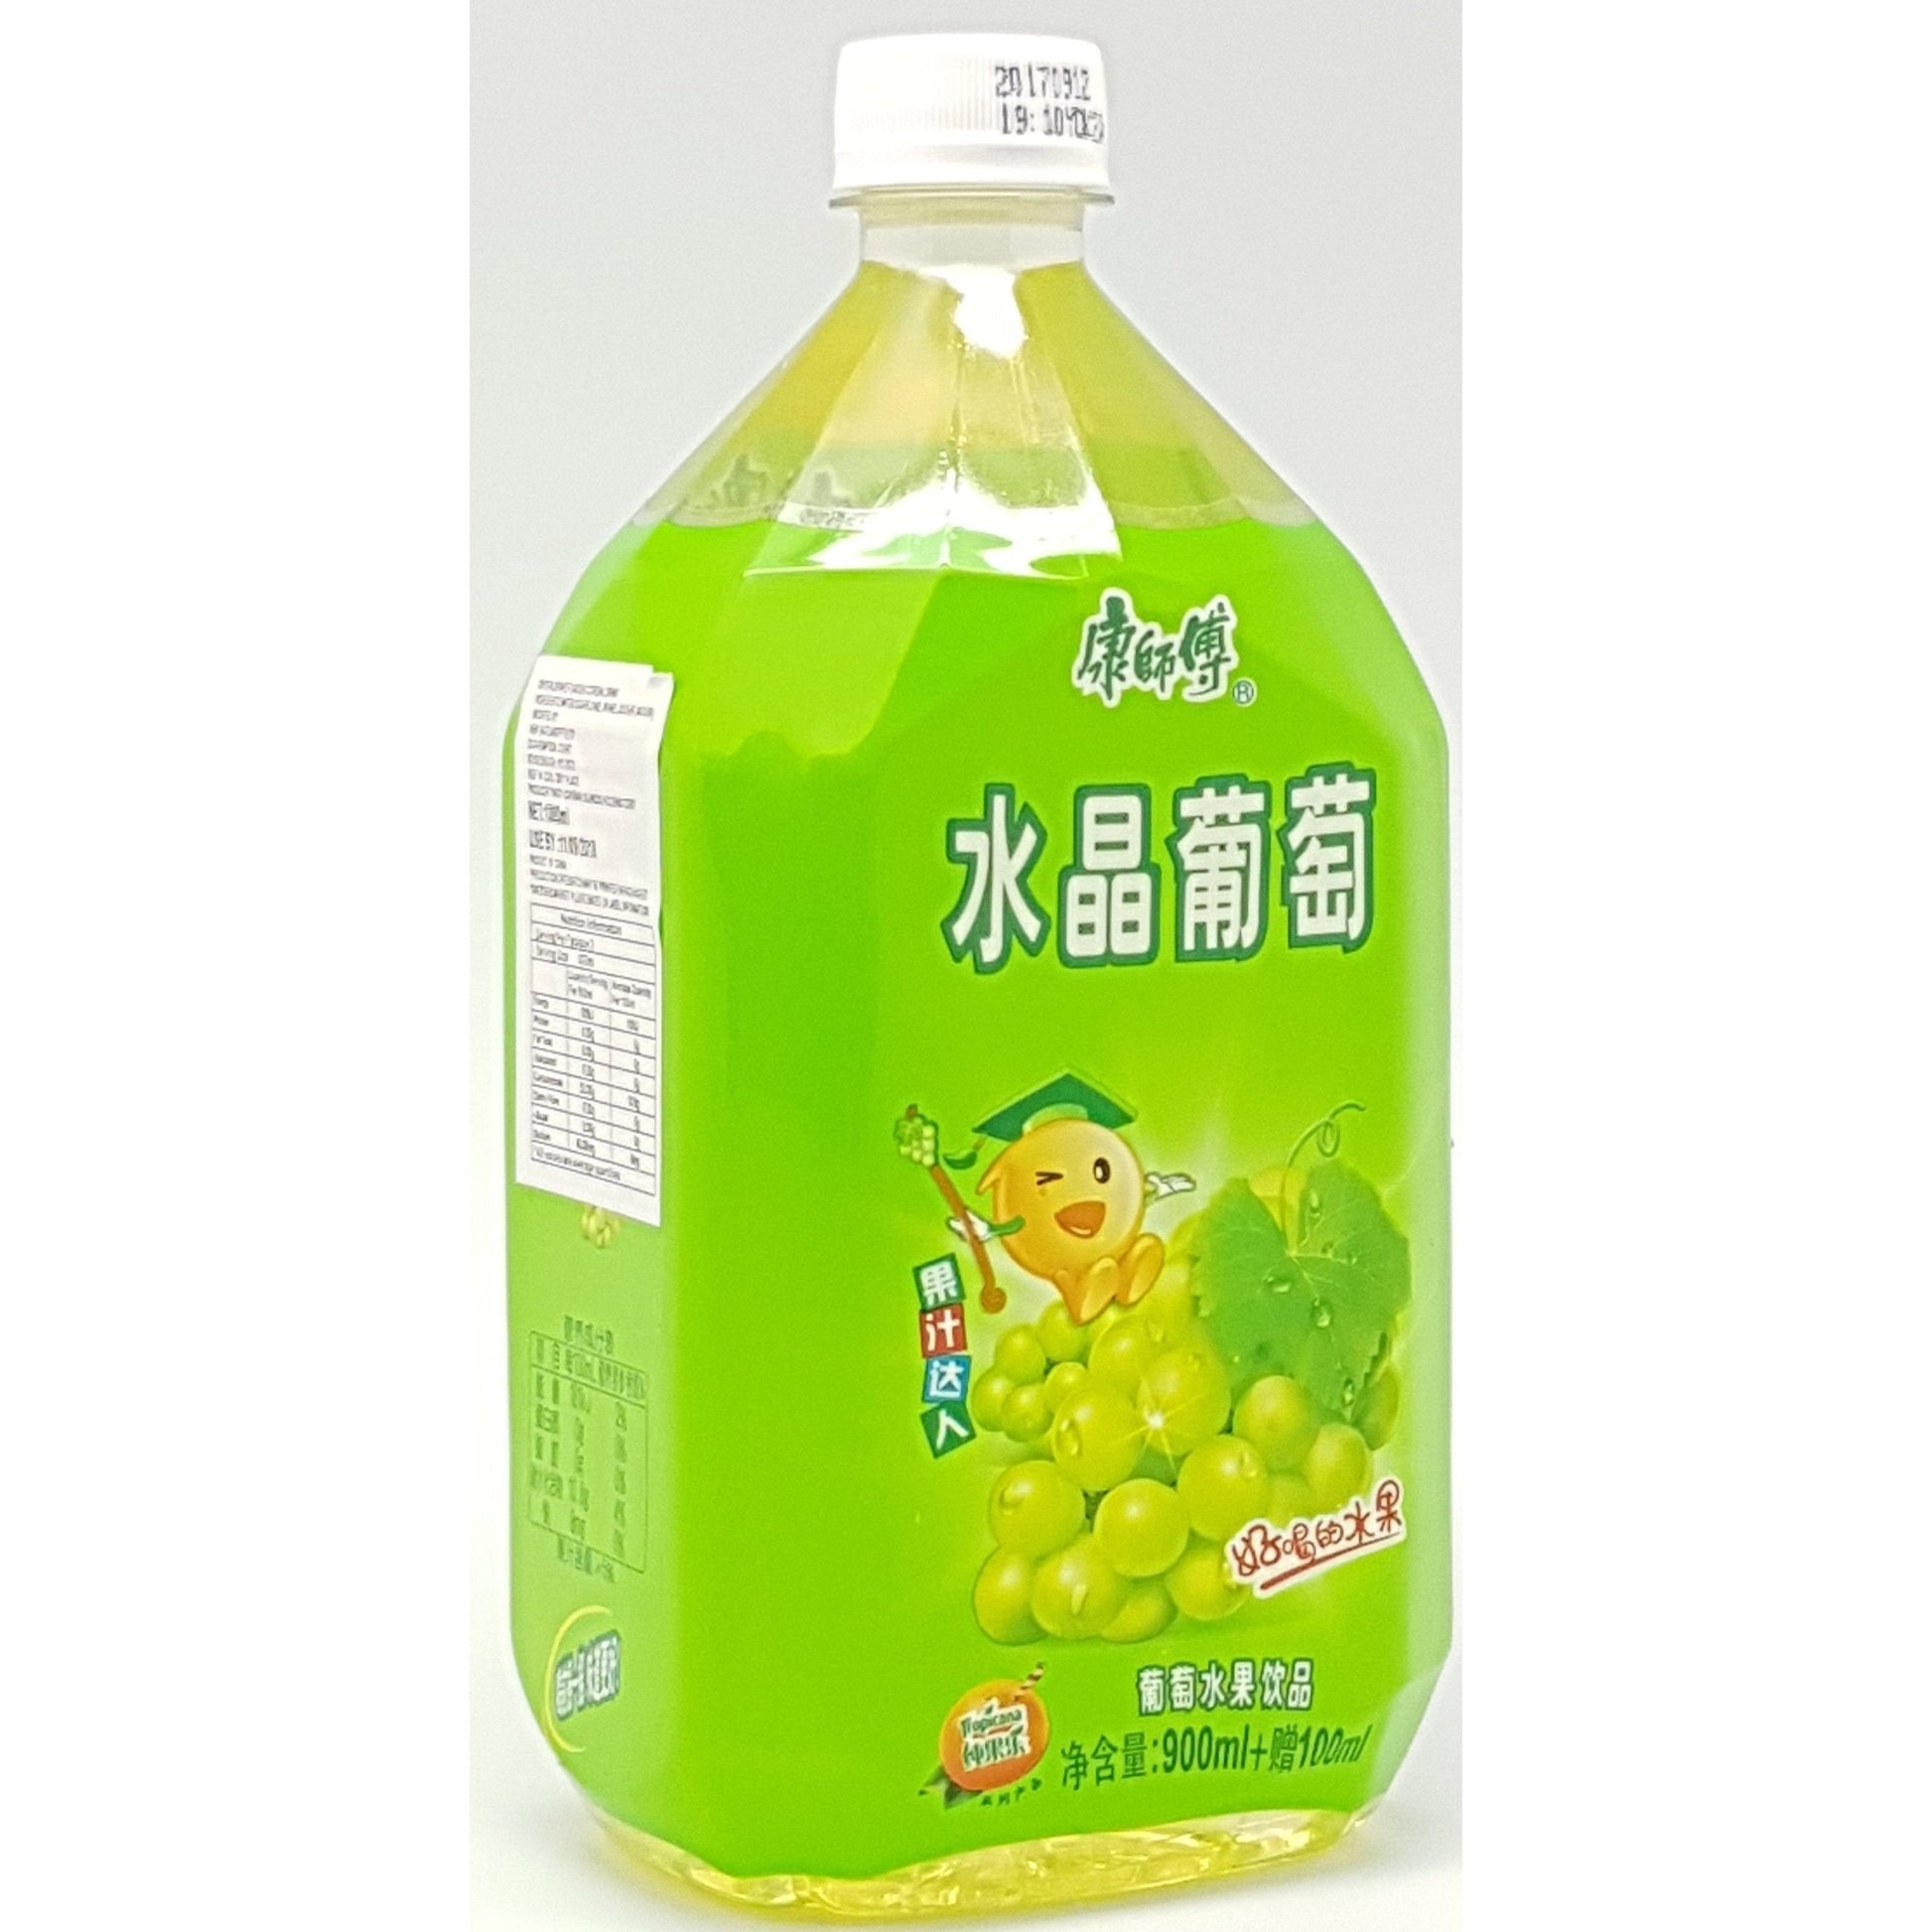 B005CL Kon Brand - Grape Drinks  1L - 8 bot/1ctn - New Eastland Pty Ltd - Asian food wholesalers